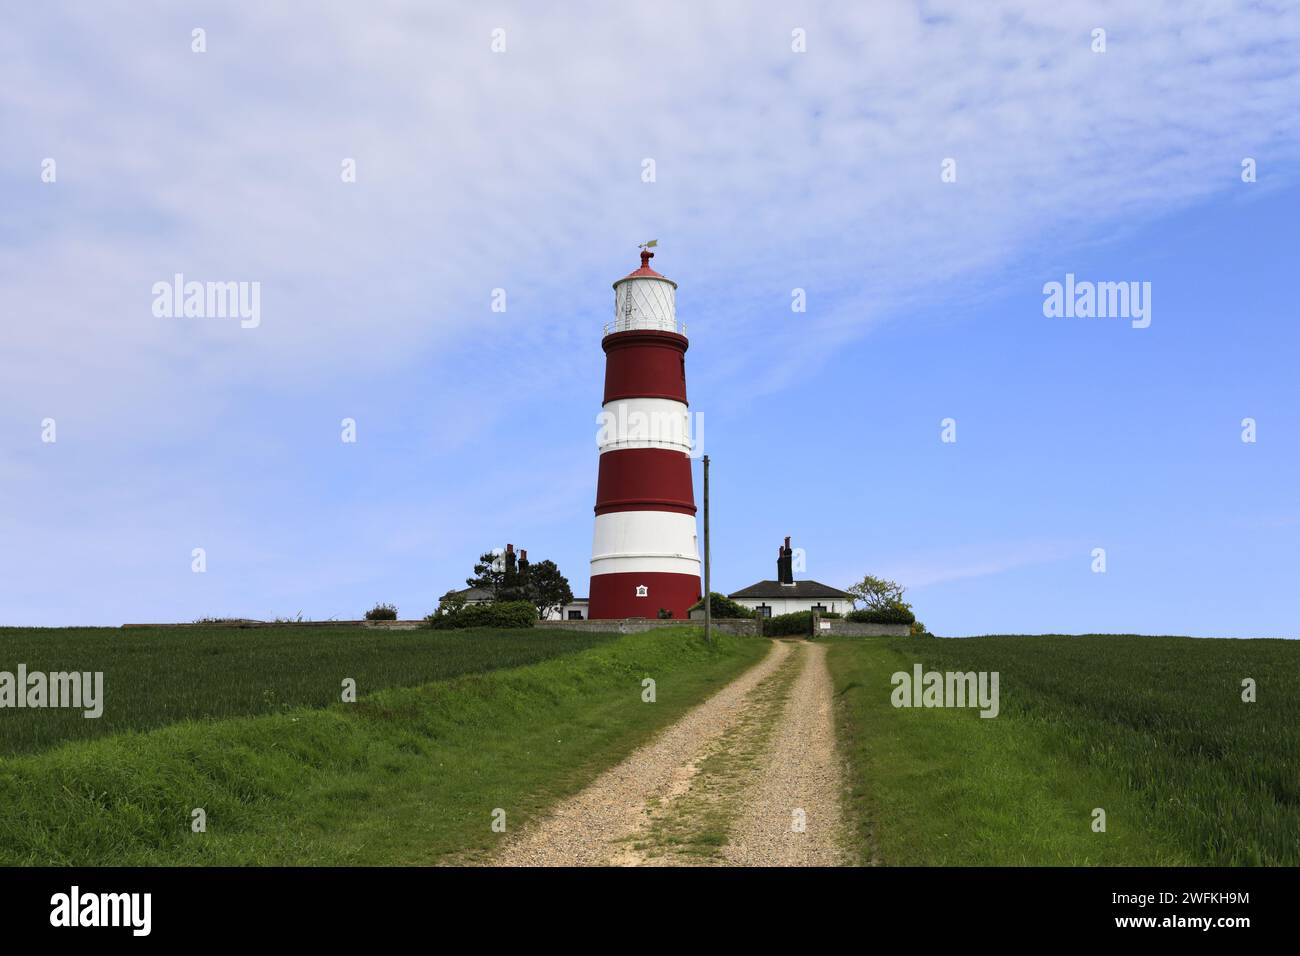 Vue sur le phare de Happisburgh, le village de Happisburgh, North Norfolk Coast, Angleterre, Royaume-Uni, c'est le seul phare indépendant au Royaume-Uni Banque D'Images